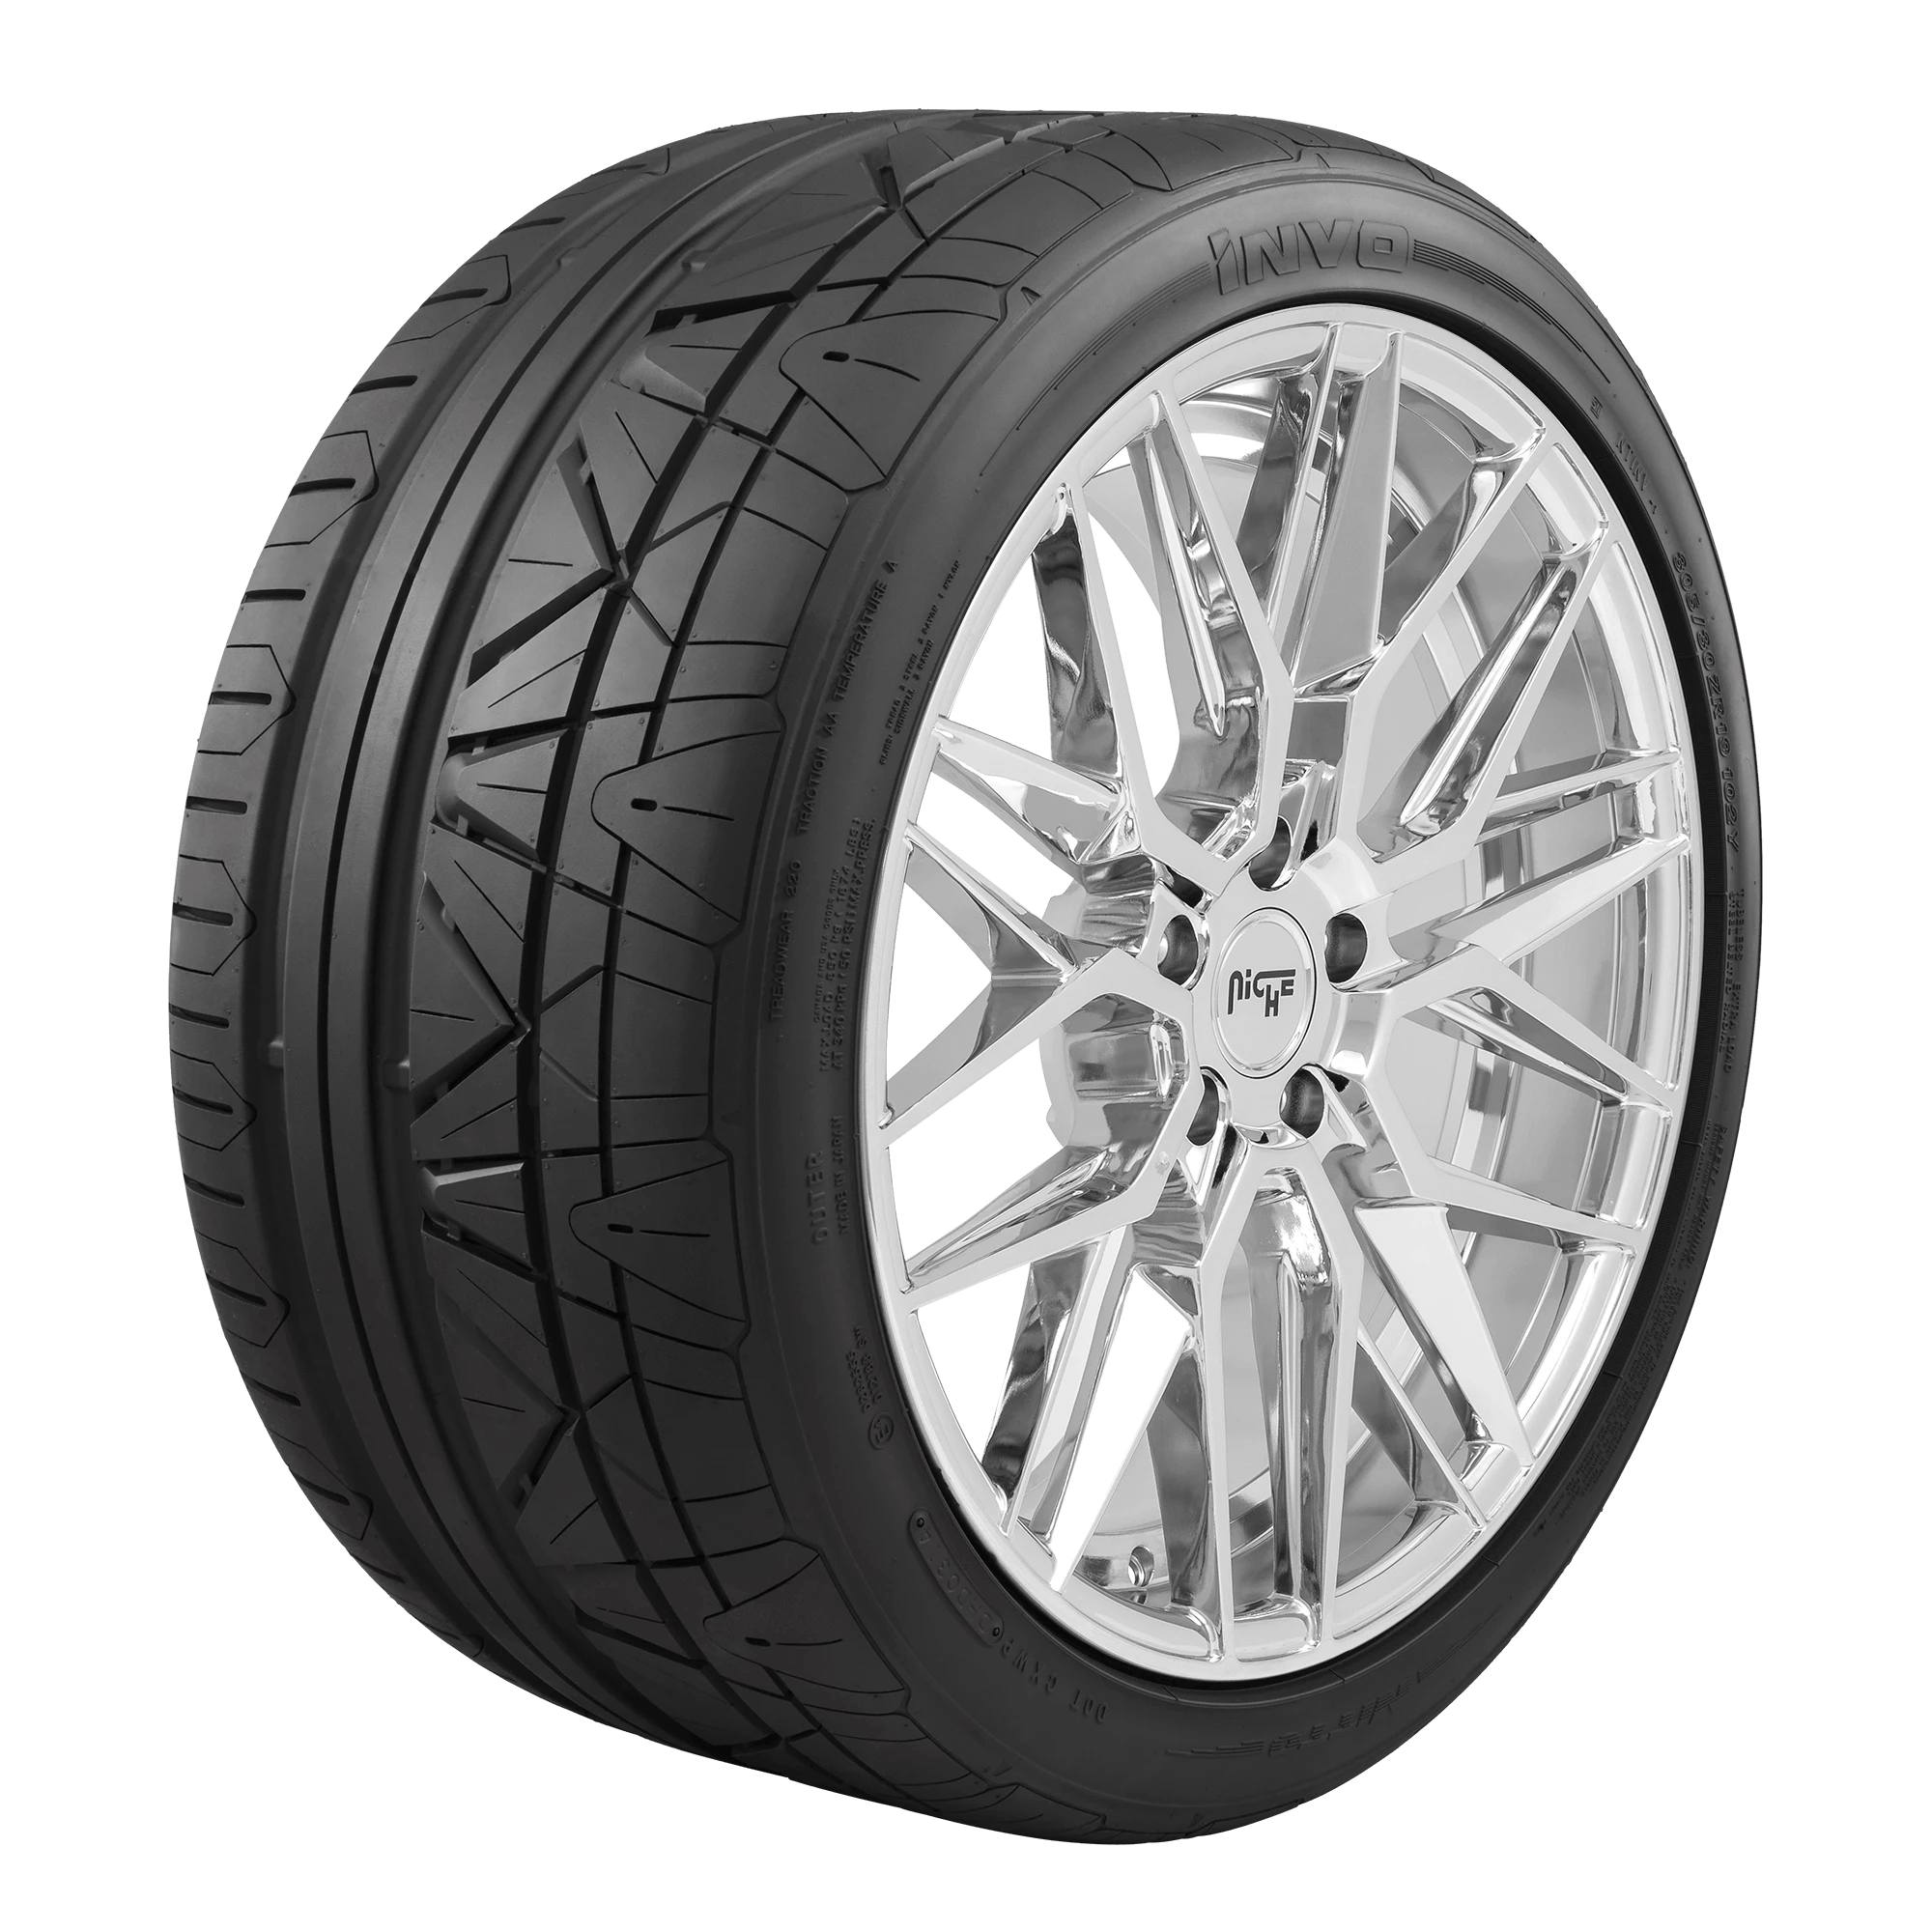 NITTO INVO 275/25ZR24 (29.5X10.6R 24) Tires